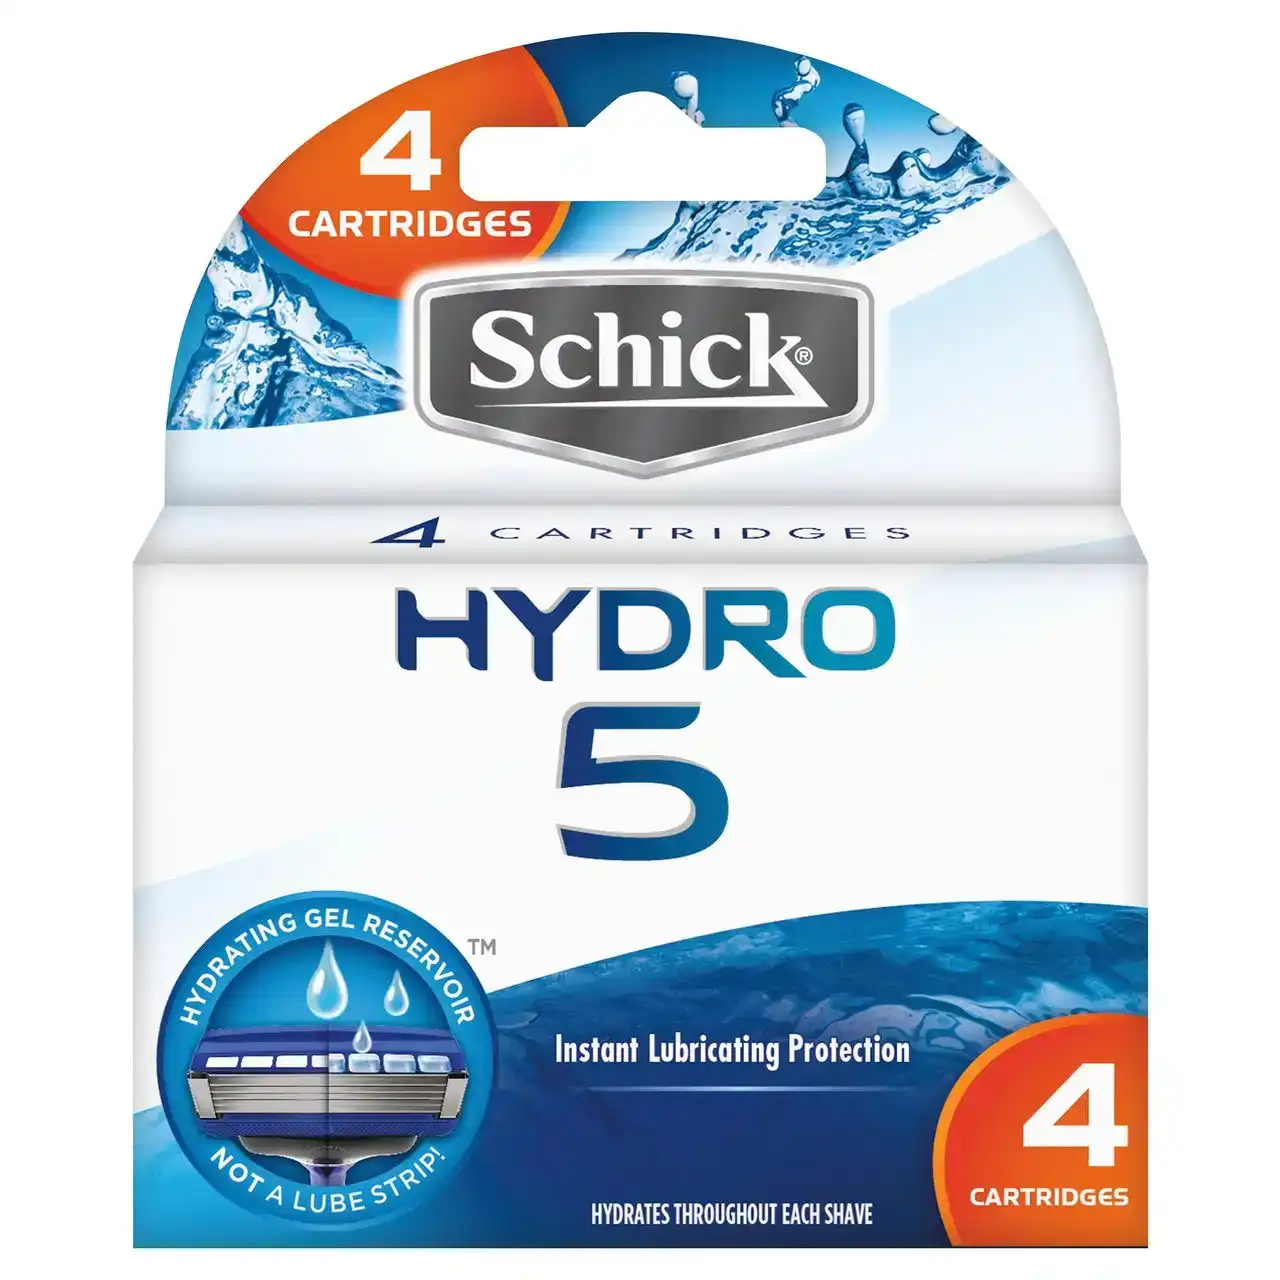 Schick Hydro 5 Cartridges 4